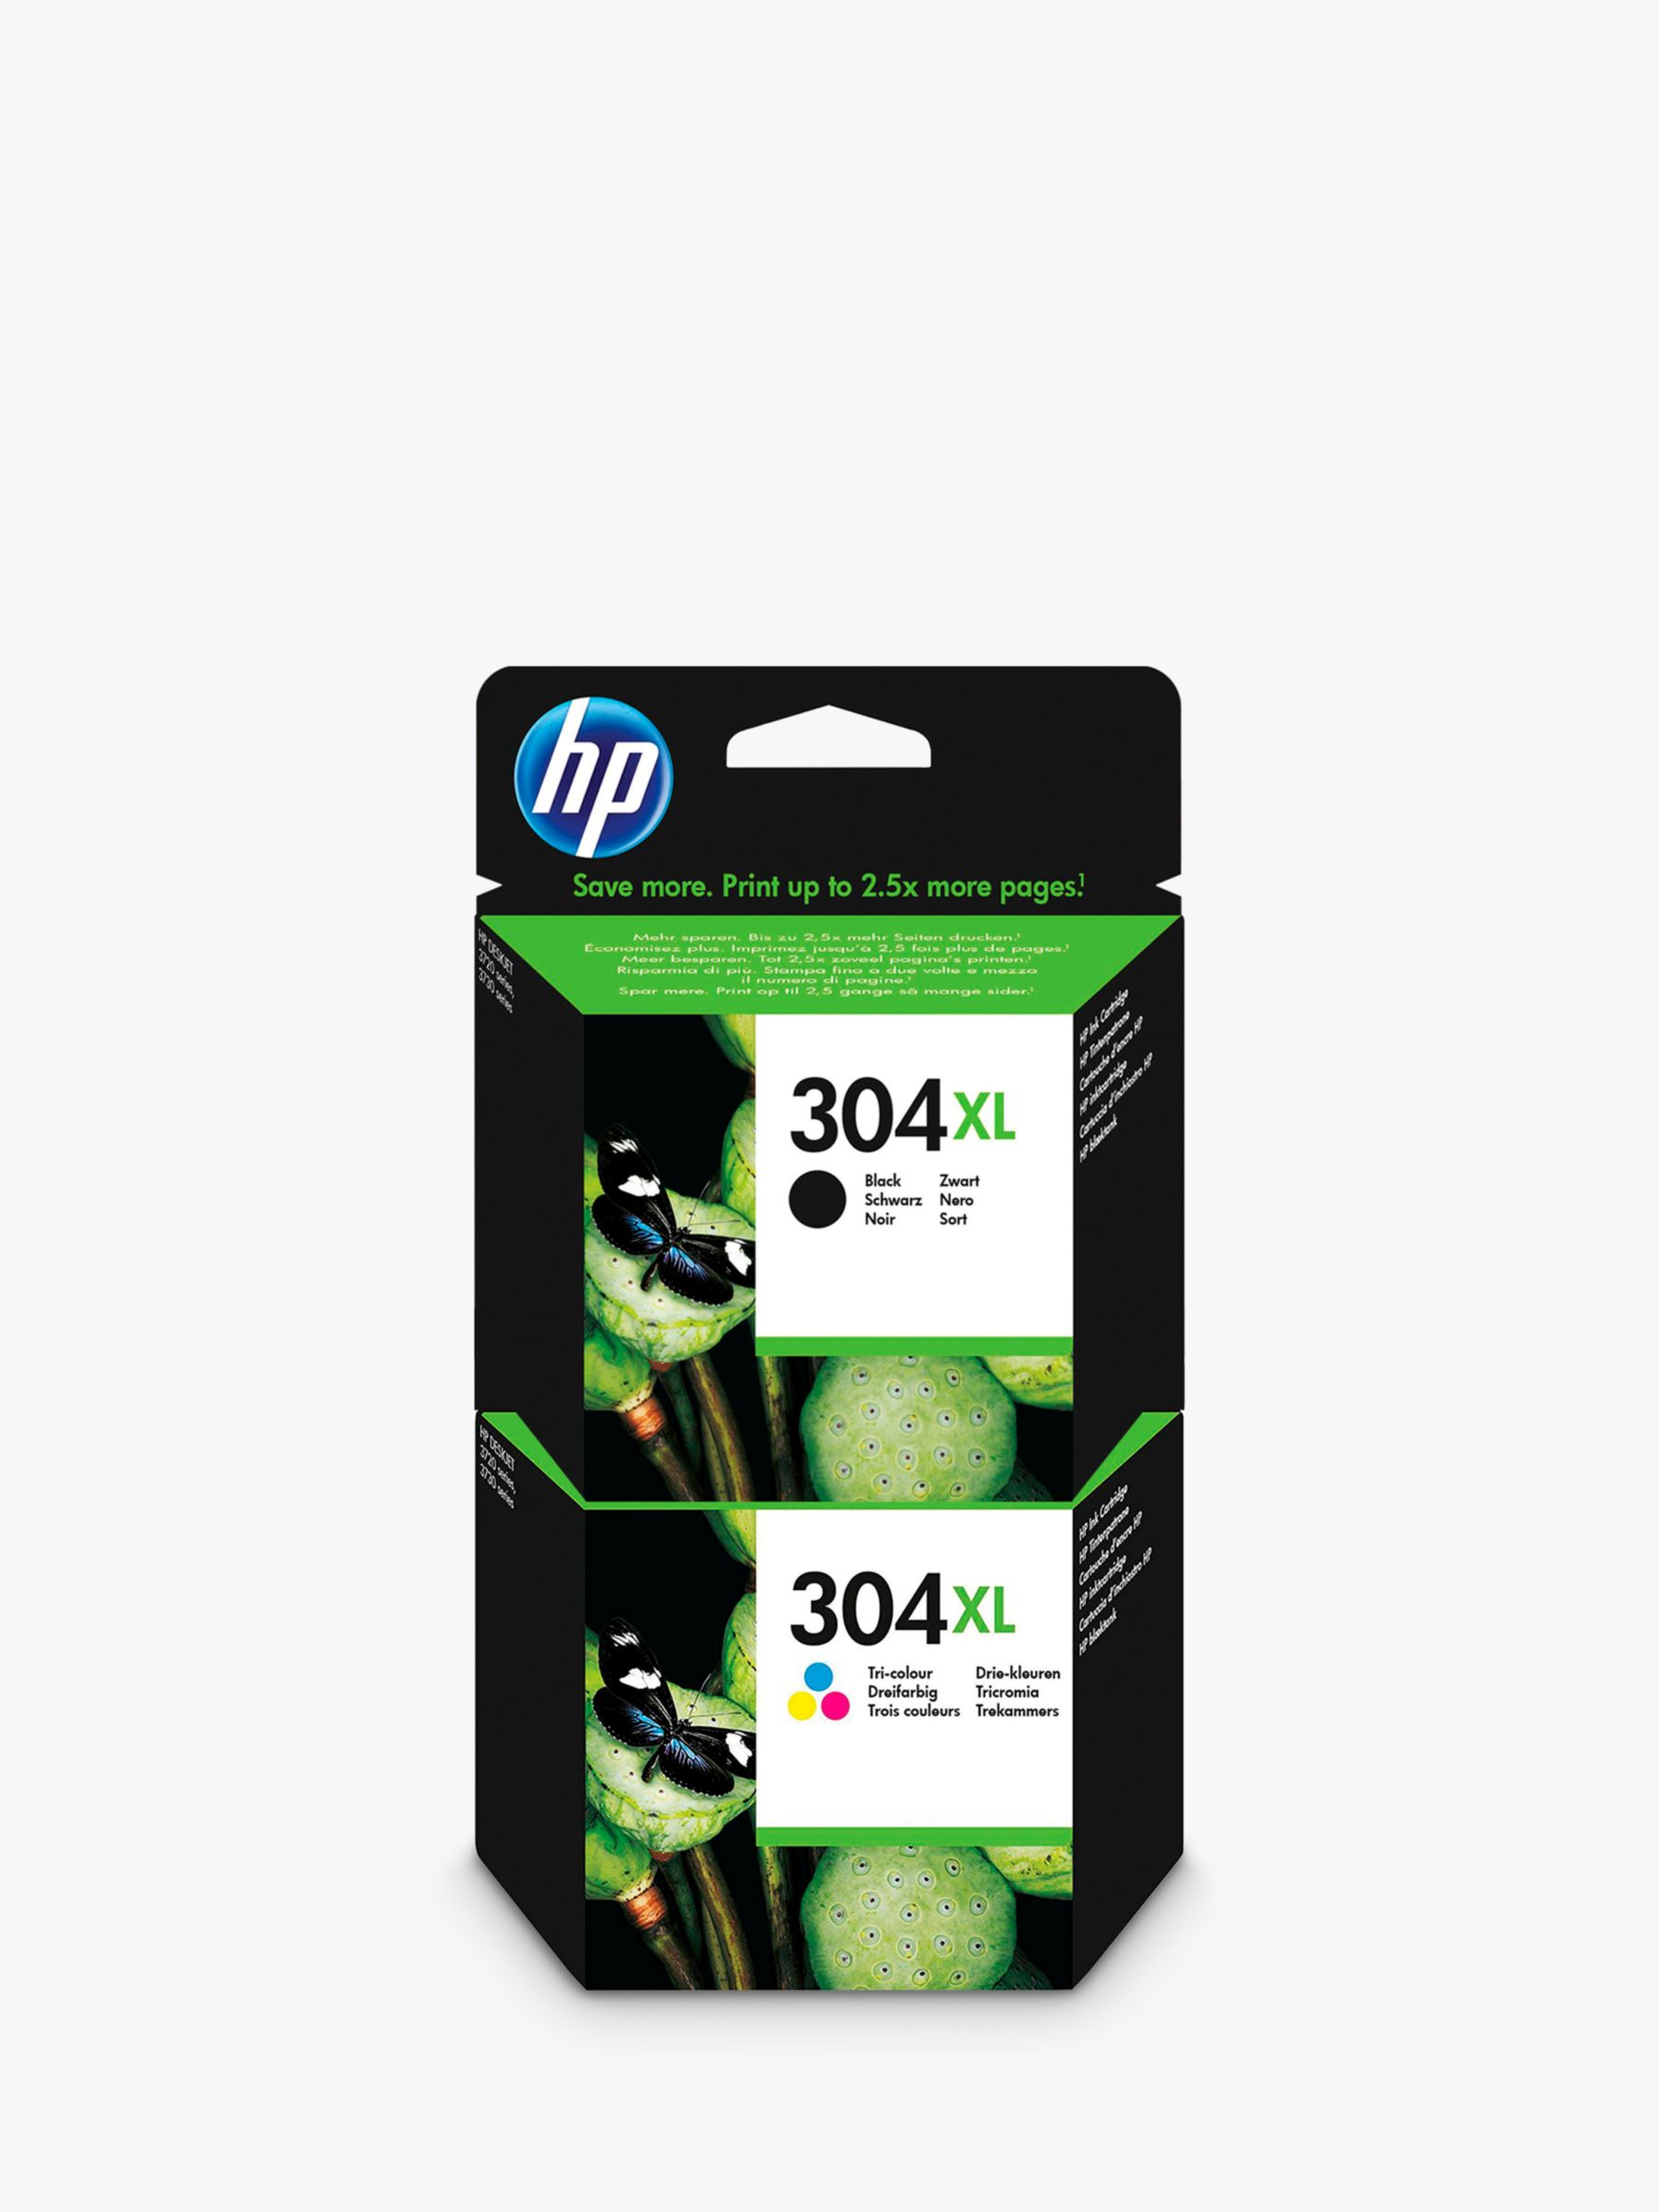 HP Printer Ink | HP Ink Cartridges | John Lewis & Partners